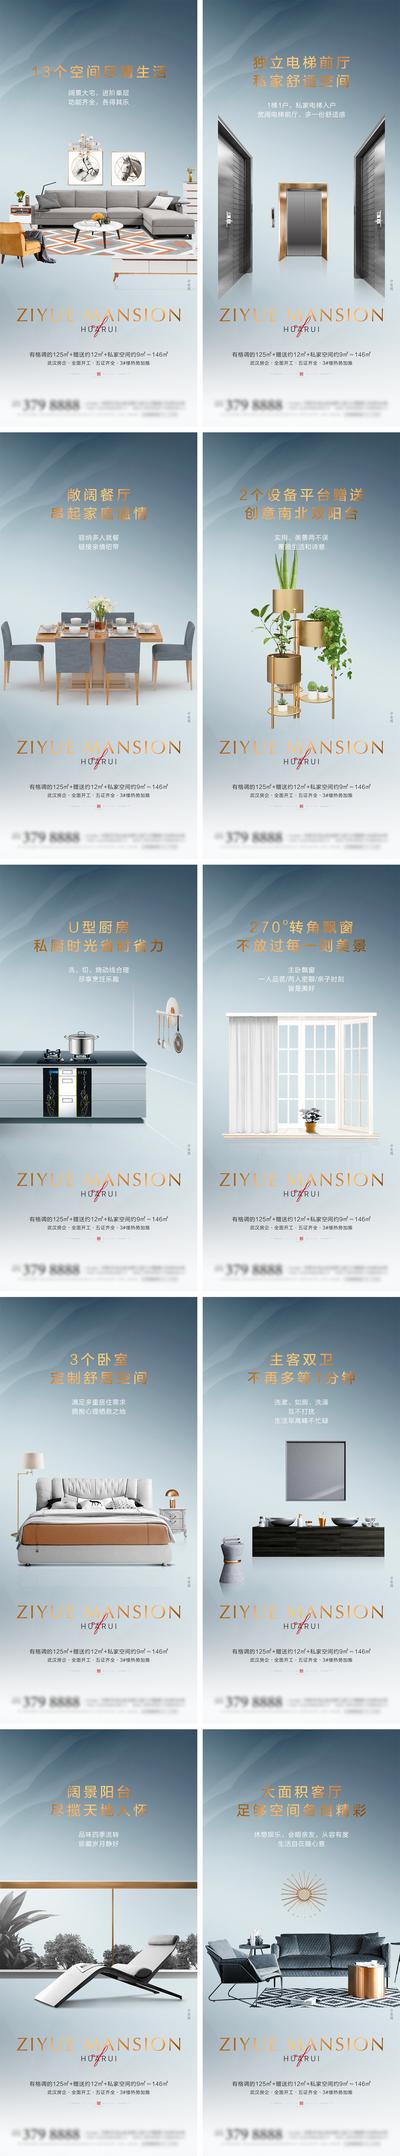 南门网 海报 房地产 户型 解析 厨房 阳台 家具 空间 电梯 卧室 洗浴 客厅 价值点 系列